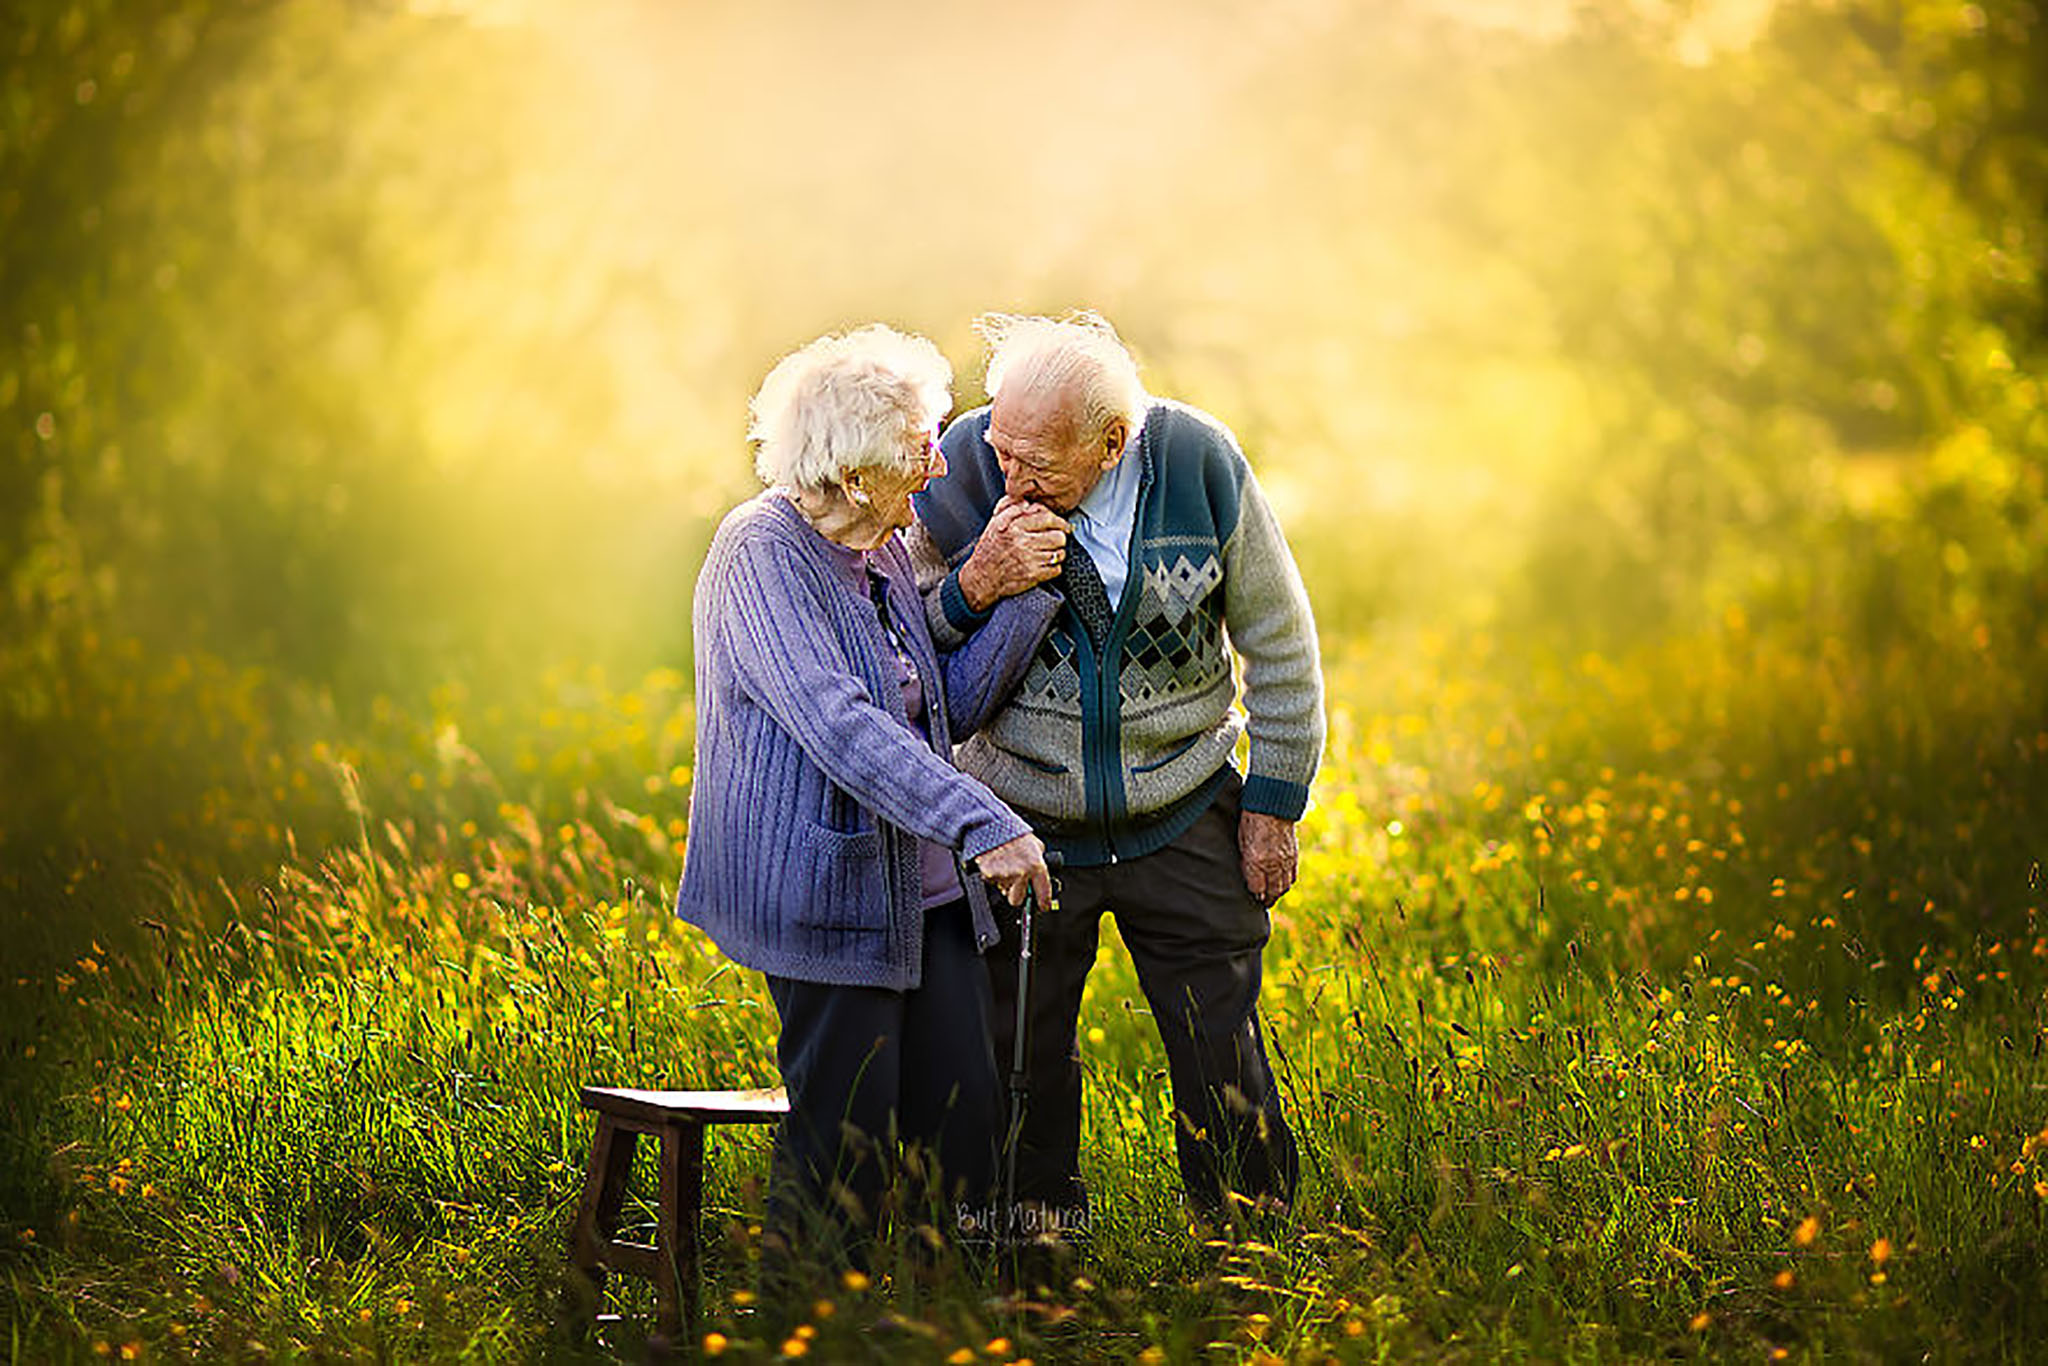 Tình yêu là sức mạnh và niềm hy vọng. Dù đã già nhưng cặp đôi này vẫn giữ được ngọn lửa tình yêu và cùng nhau trải qua những ngày đầy hạnh phúc. Bức ảnh của họ là một lời chúc phúc và hy vọng cho những người yêu nhau mãi mãi.